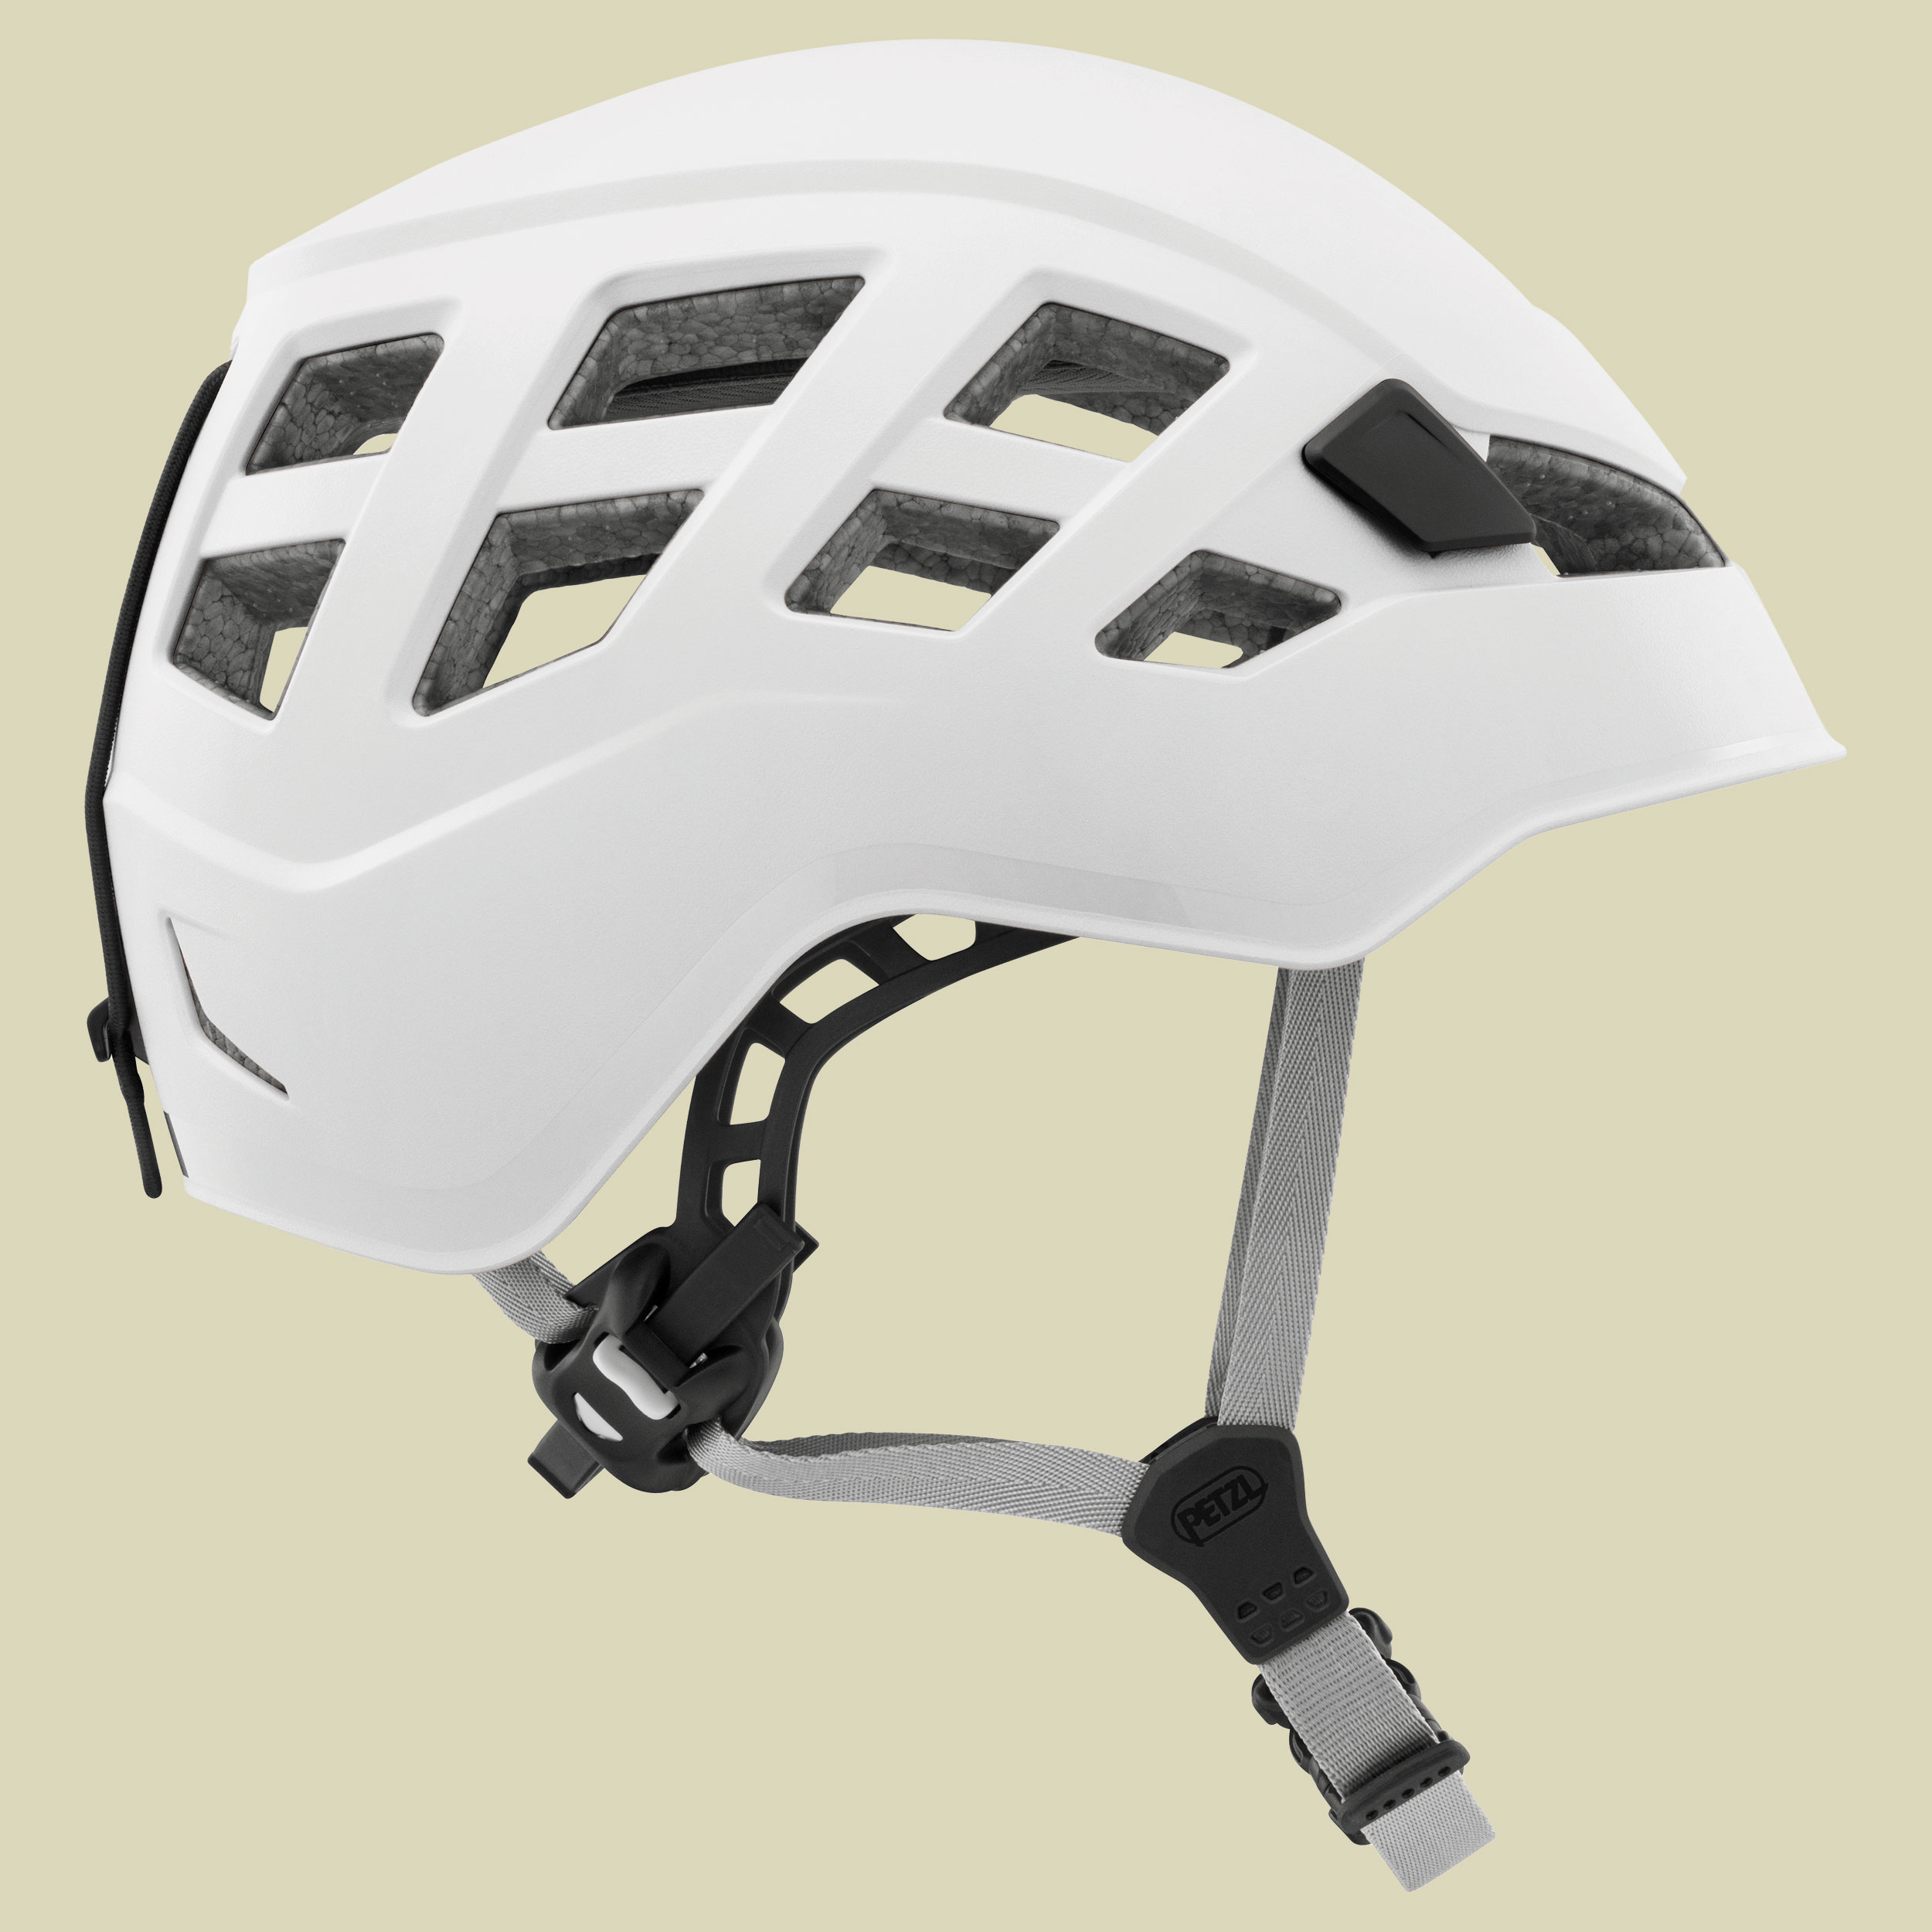 Boreo Helm Größe S/M Farbe weiß